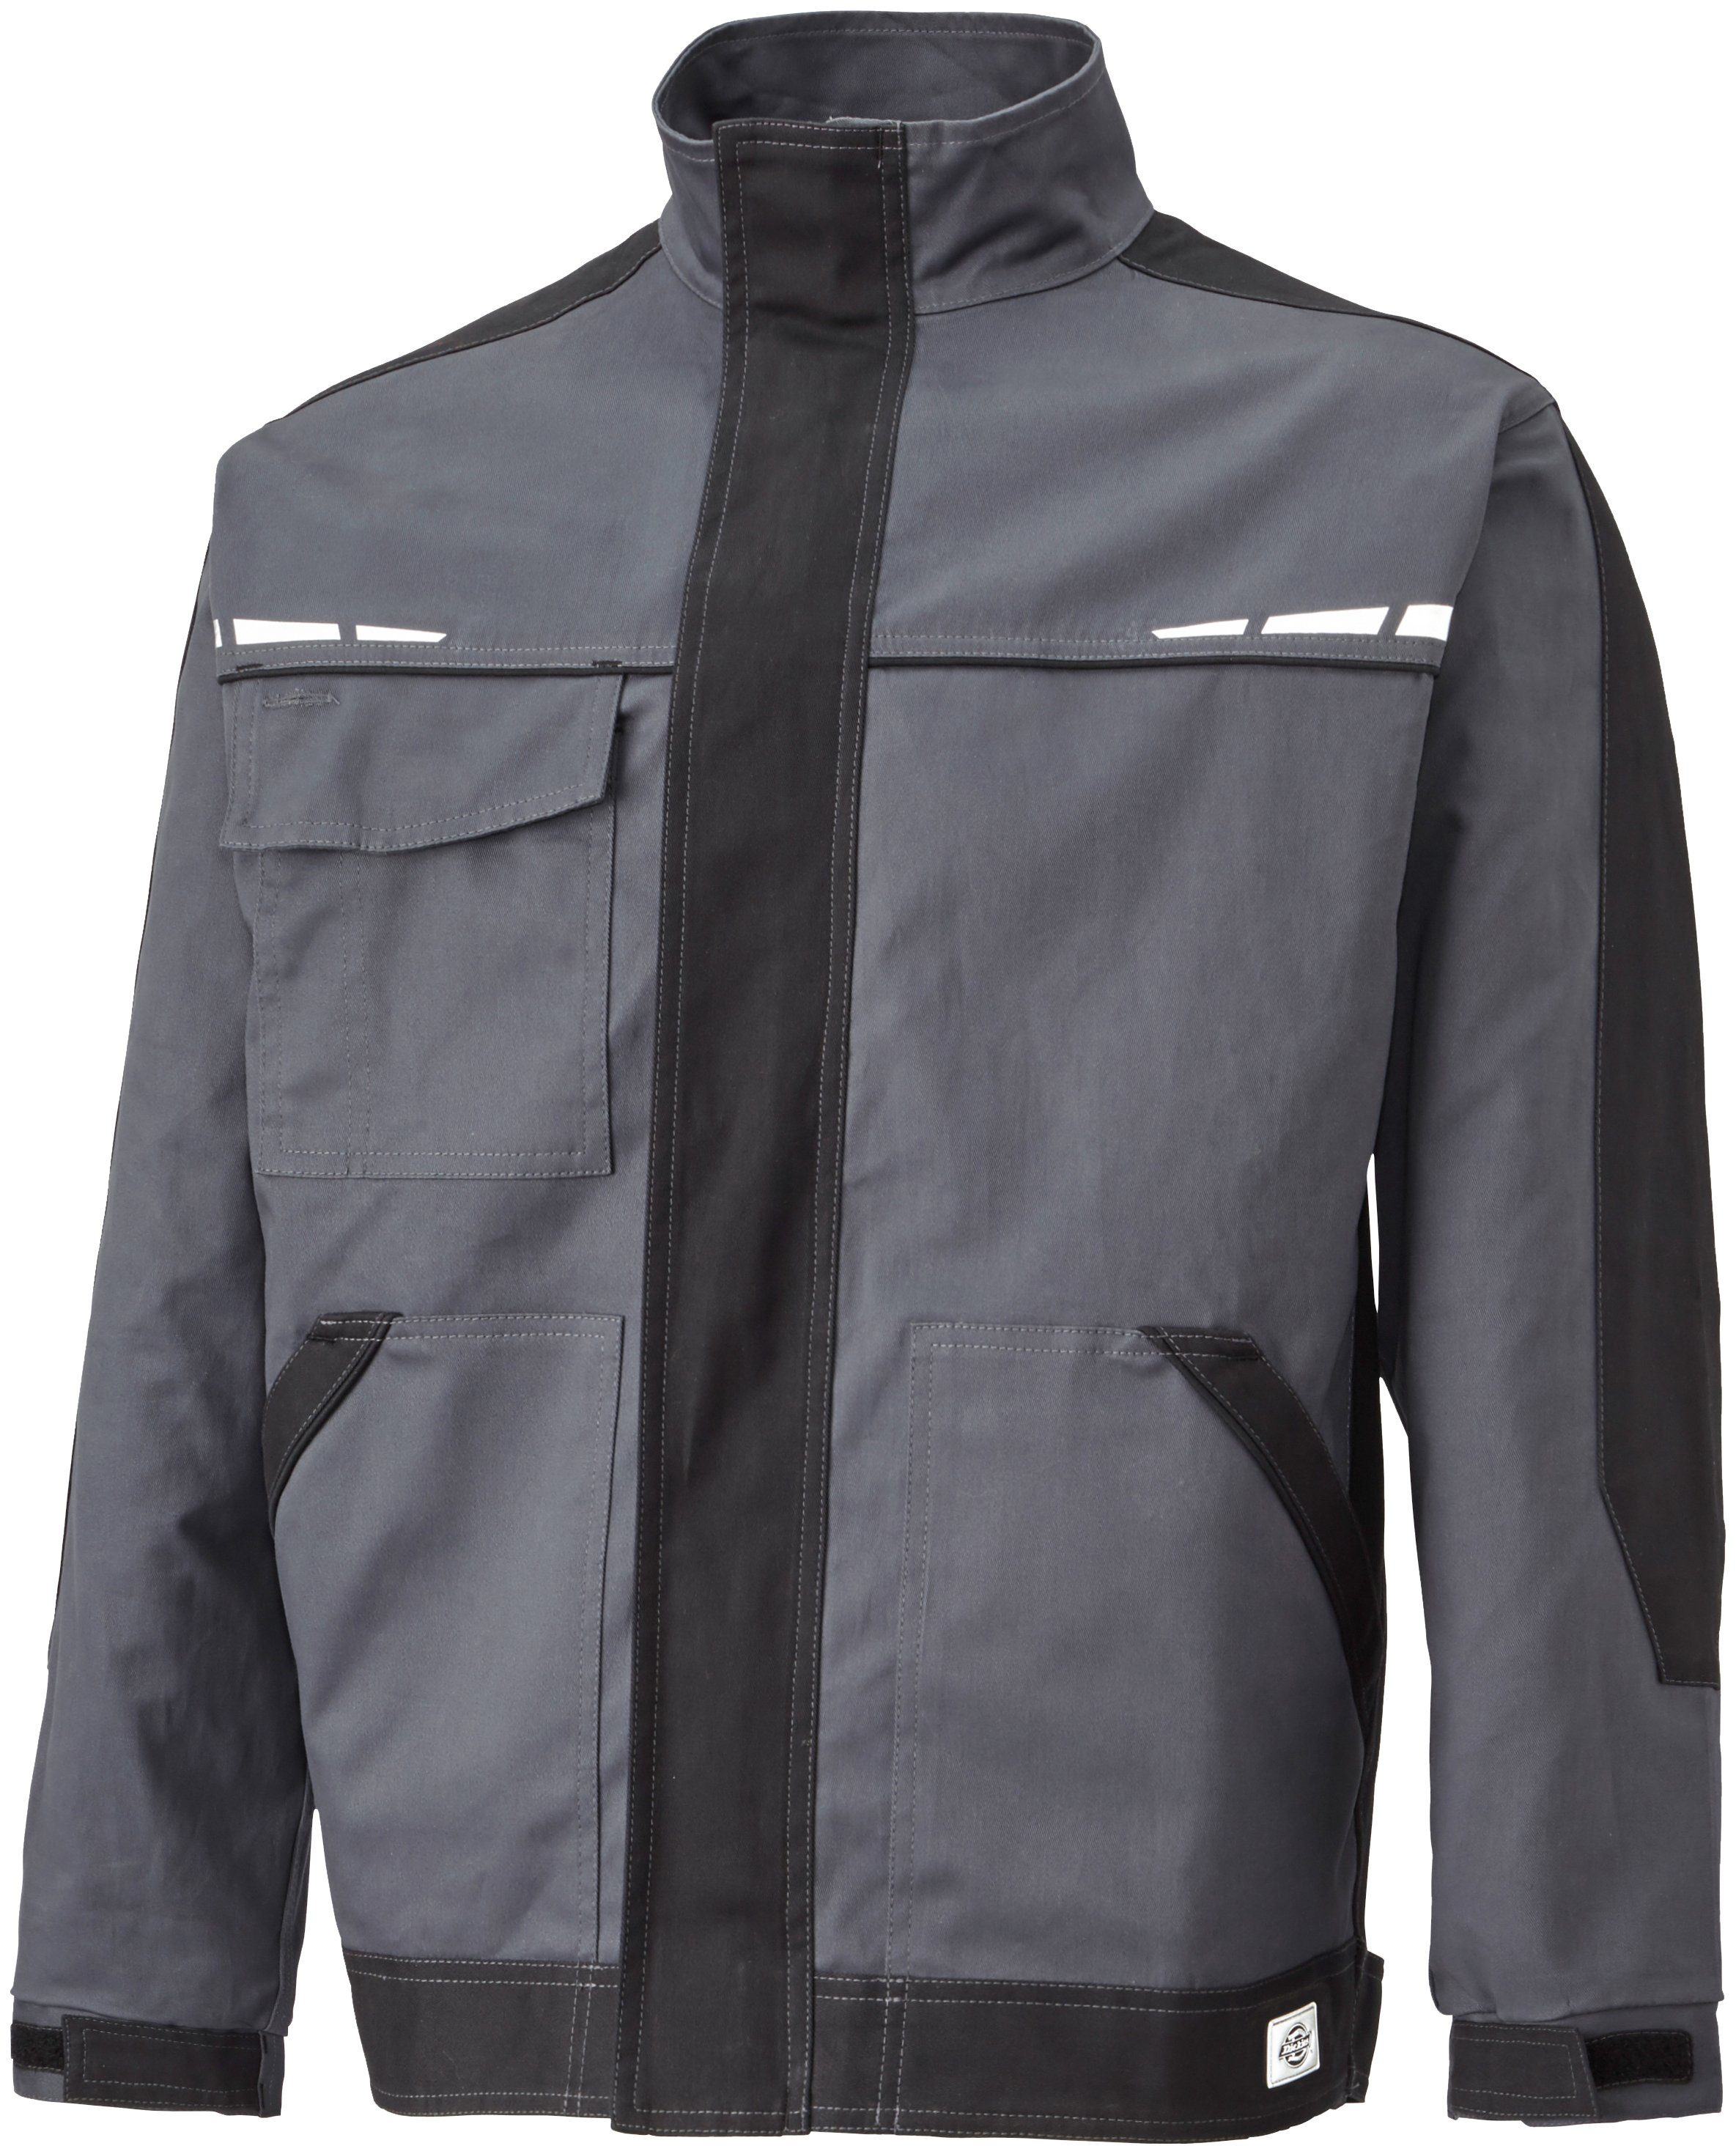 Premium Designelemente grau-schwarz Dickies GDT Reflektierende Arbeitsjacke